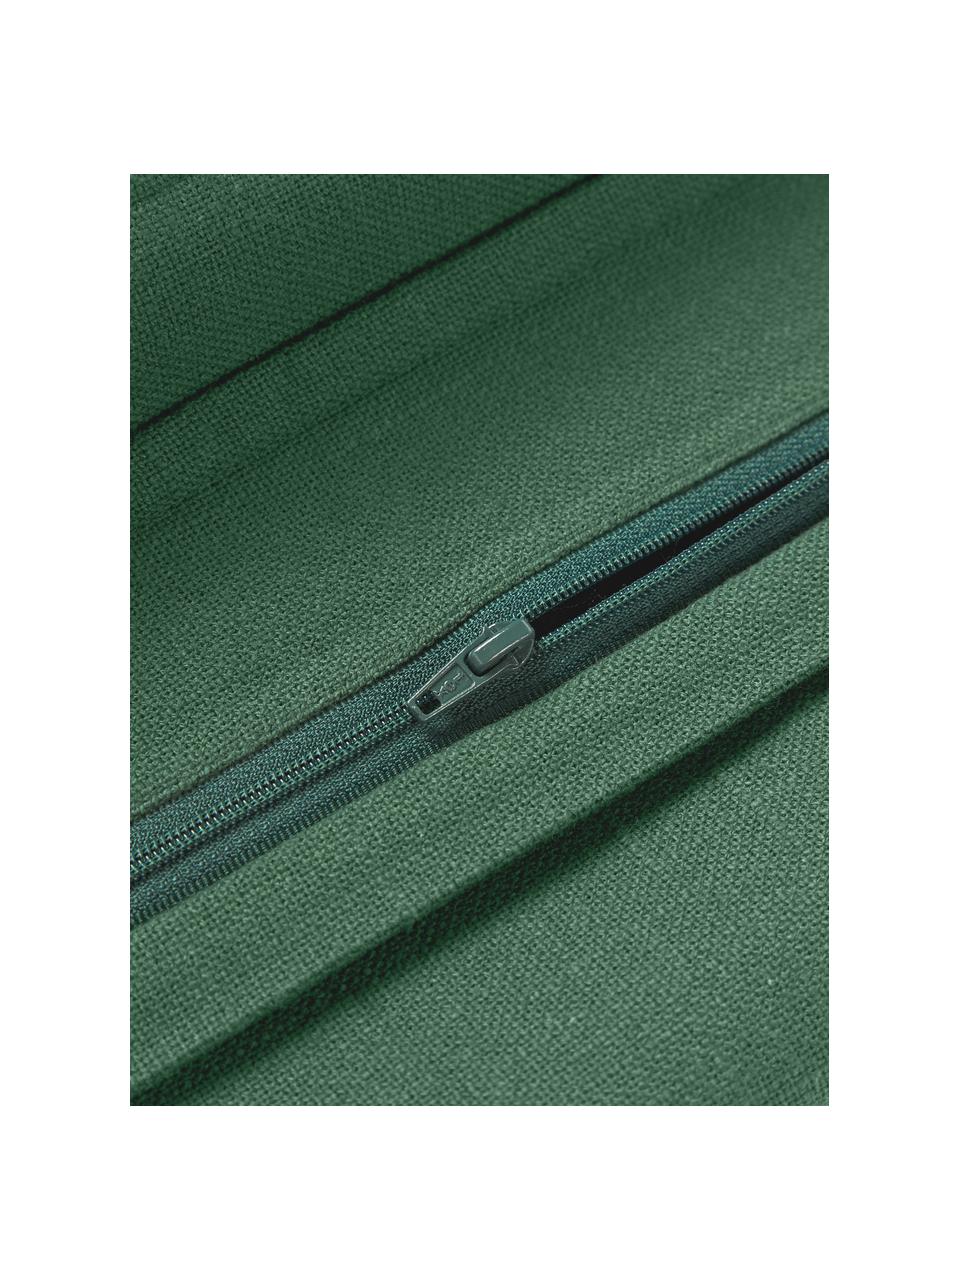 Poszewka na poduszkę z bawełny Vicky, 100% bawełna, Ciemny zielony, S 30 x D 50 cm